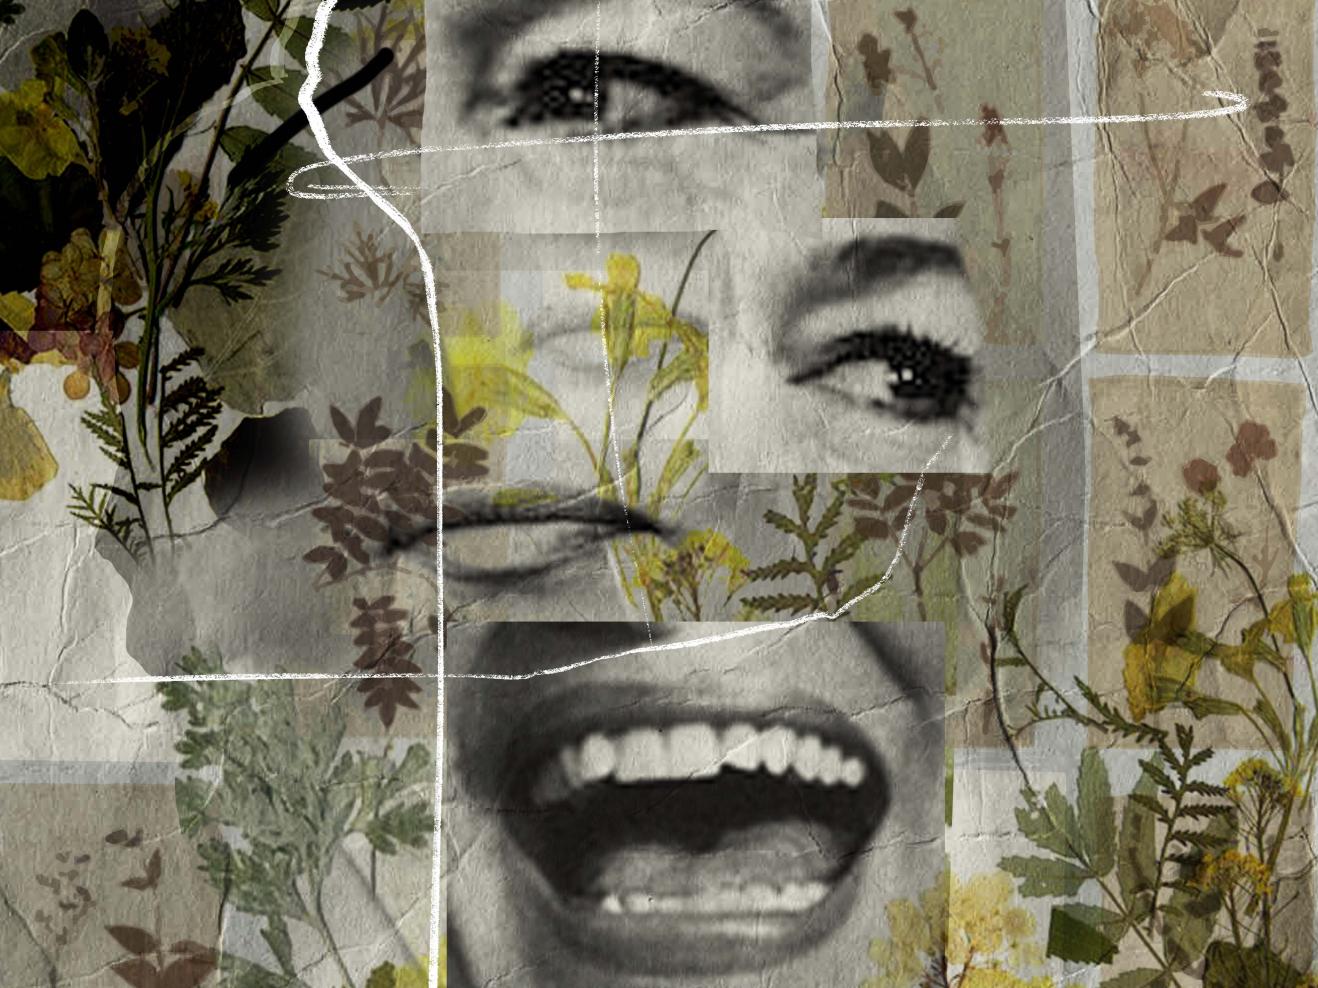 Das Bild zeigt eine Collage aus getrockneten Blumen und Versatzstücke des Gesichts von Hannelore Elsner. Ein großer Lachender Mund, ein geschlossener Mund, zwei Augen.